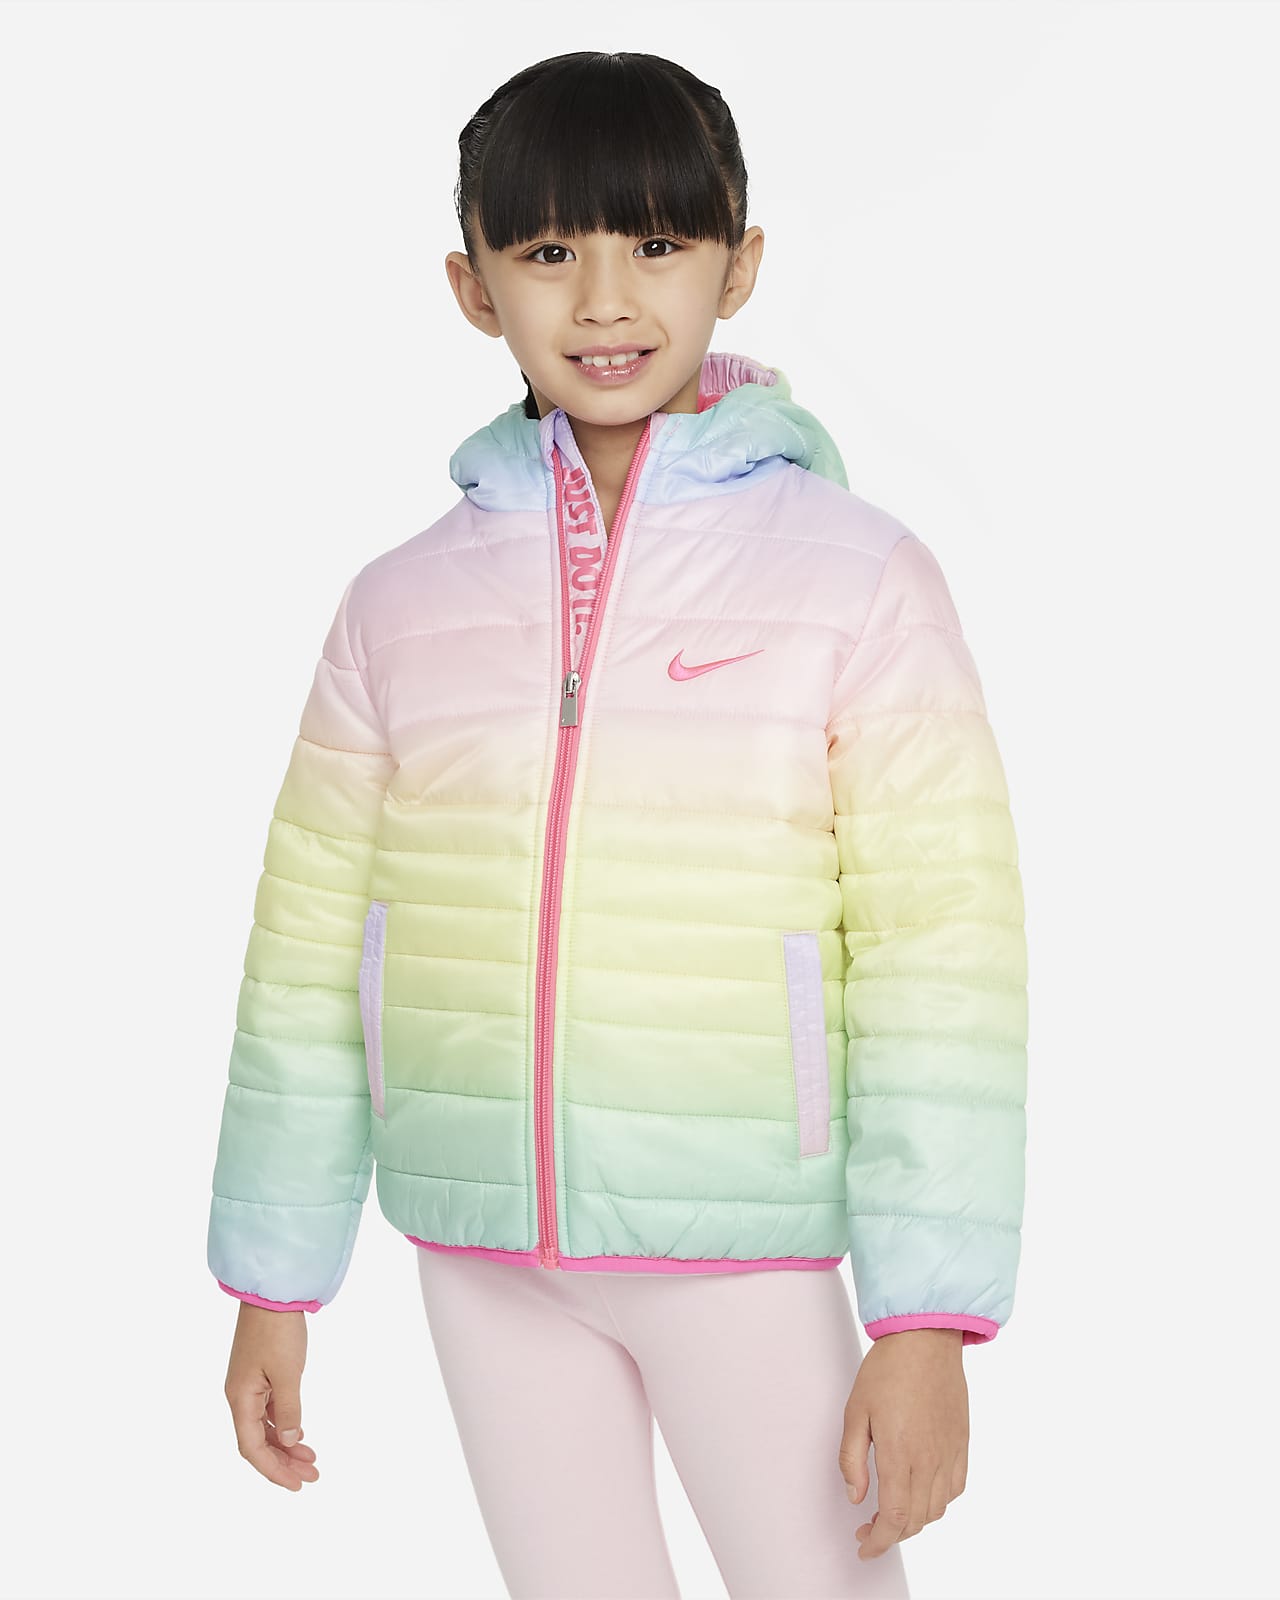 Buy Girls Pink Printed Hooded Full Sleeve Girls Jacket Online in India -  Monte Carlo